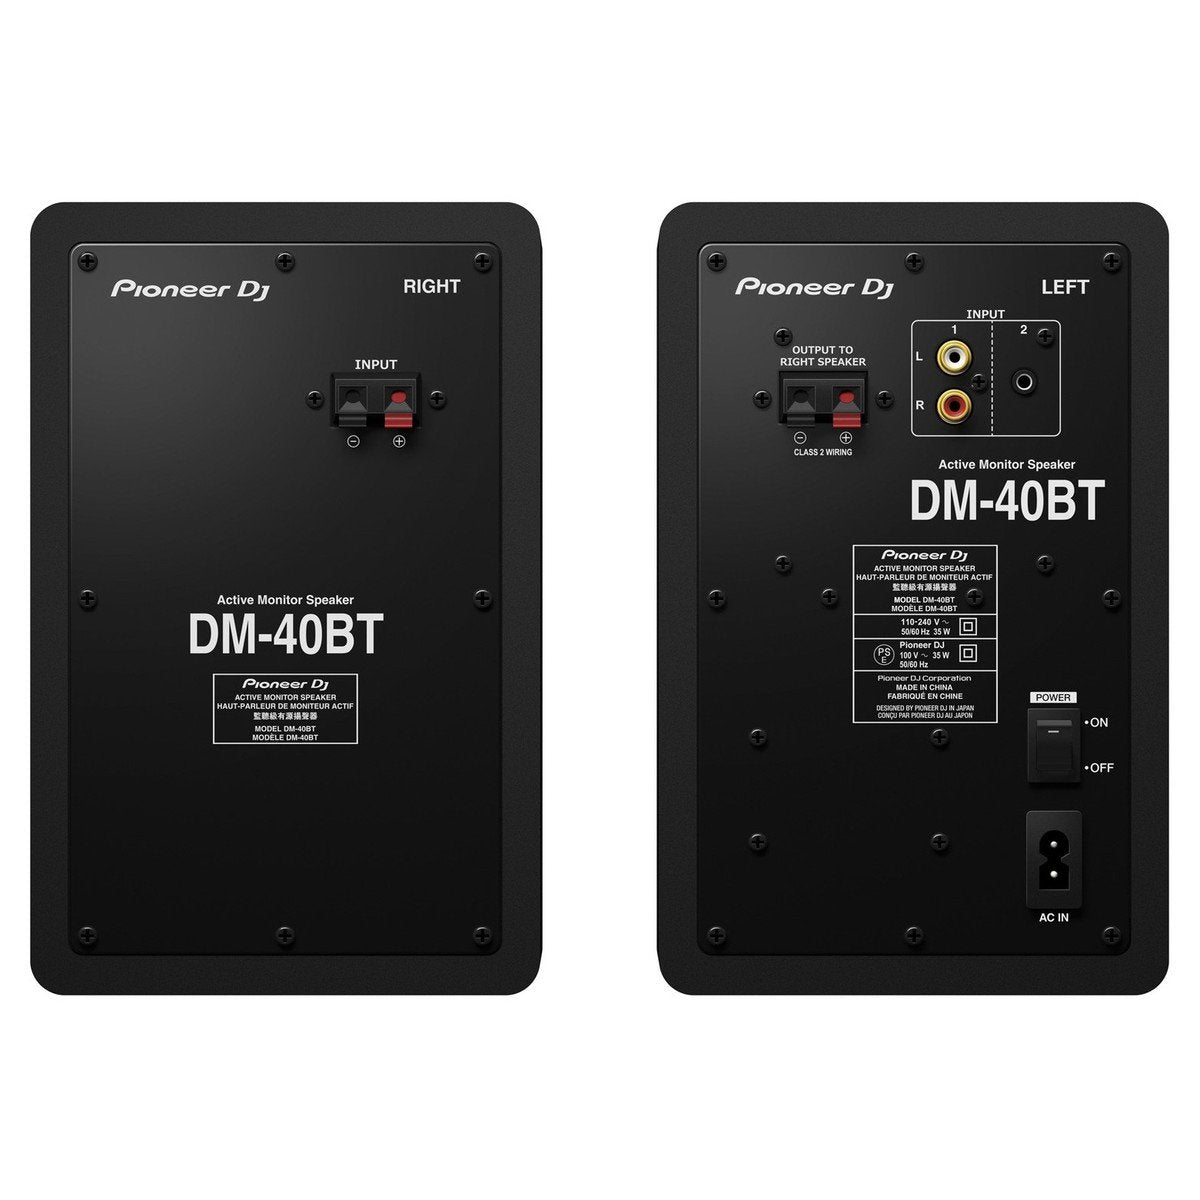 Pioneer DM-40D-BT Black Active Monitors (Pair) - DY Pro Audio